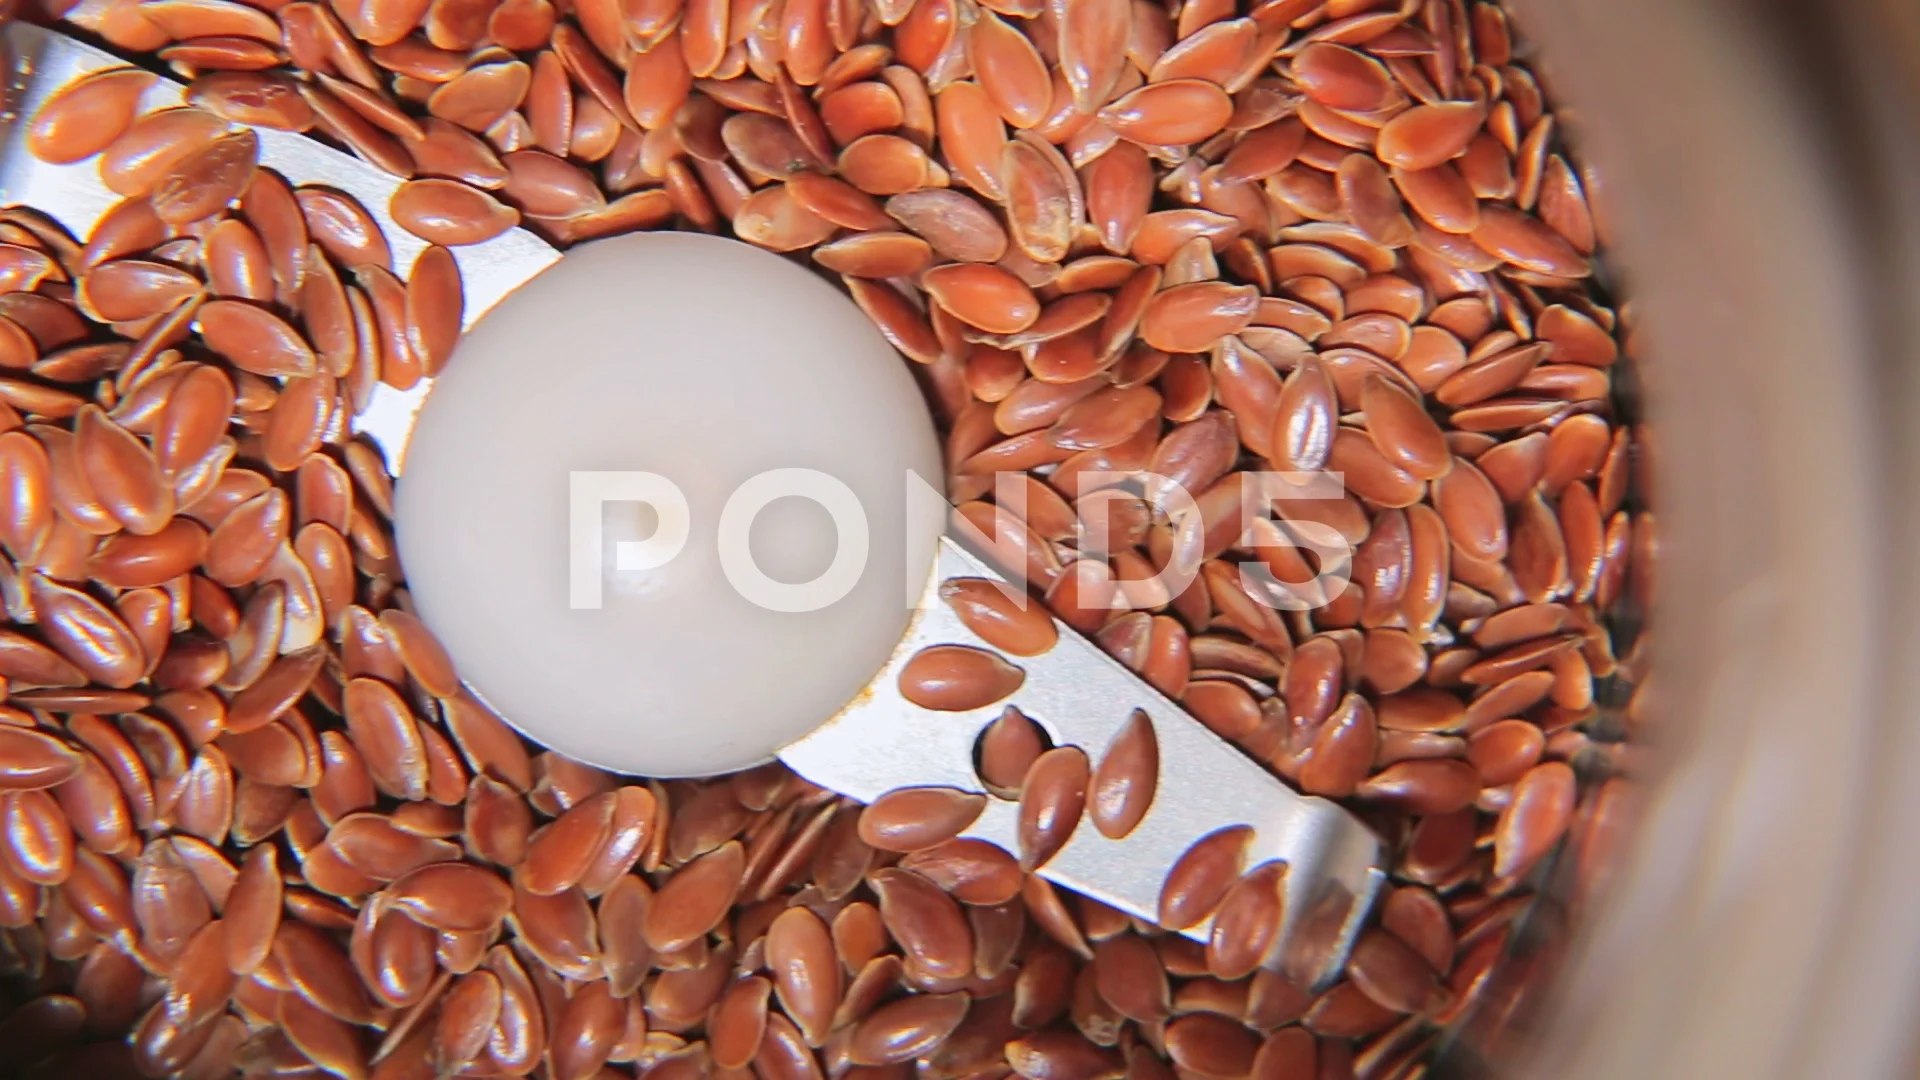 https://images.pond5.com/flax-seed-seed-grinder-grind-footage-102848037_prevstill.jpeg